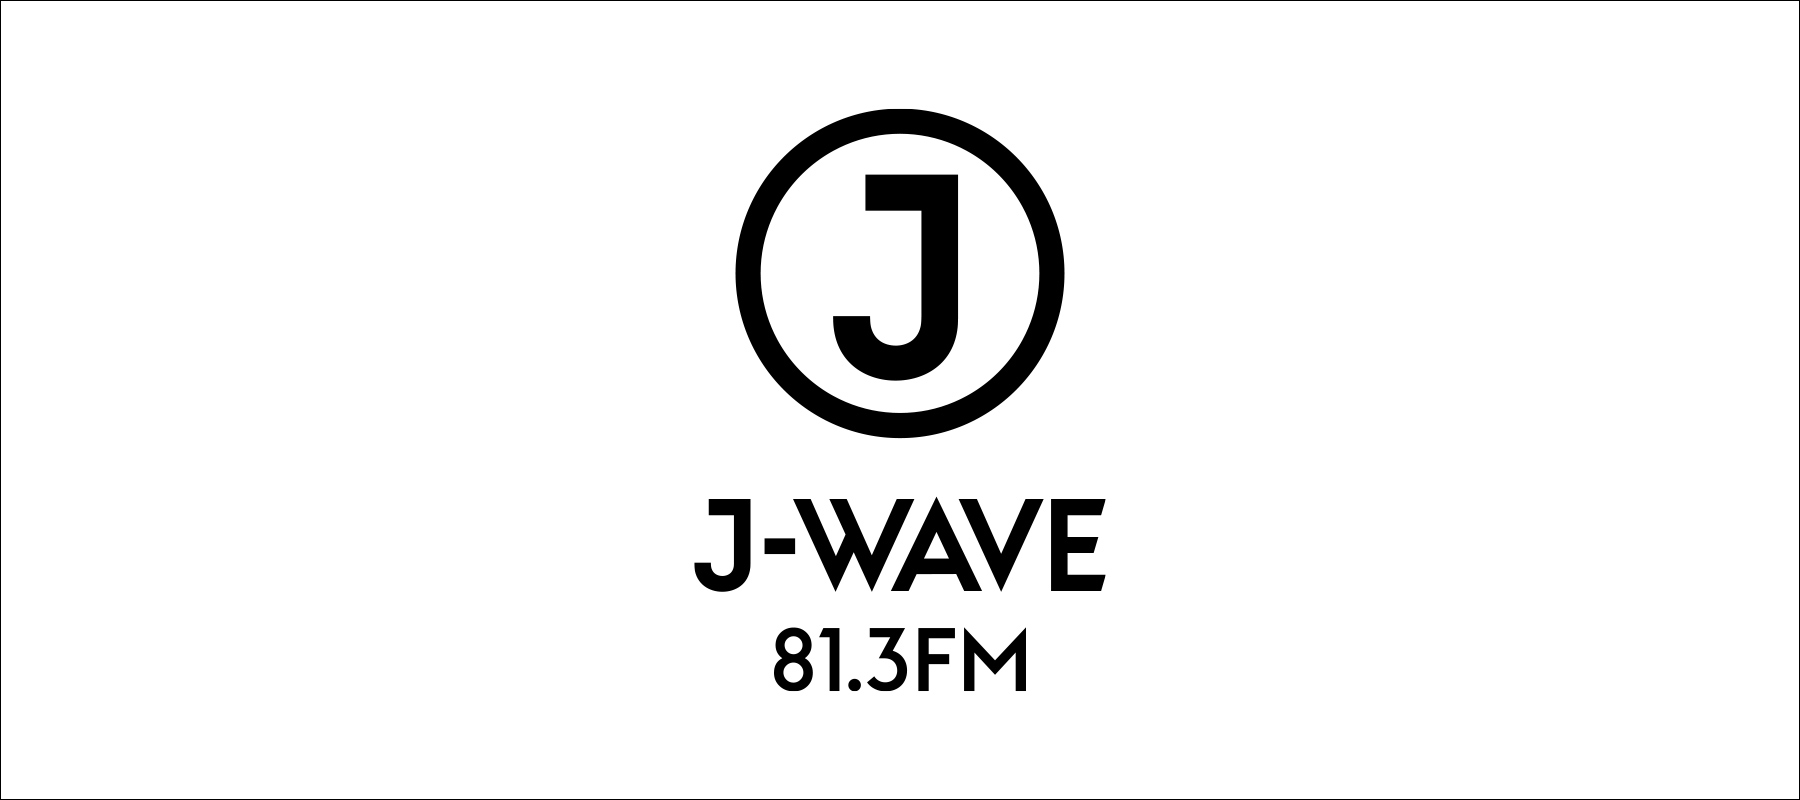 J-WAVEはステートメントとロゴをリニューアルしました